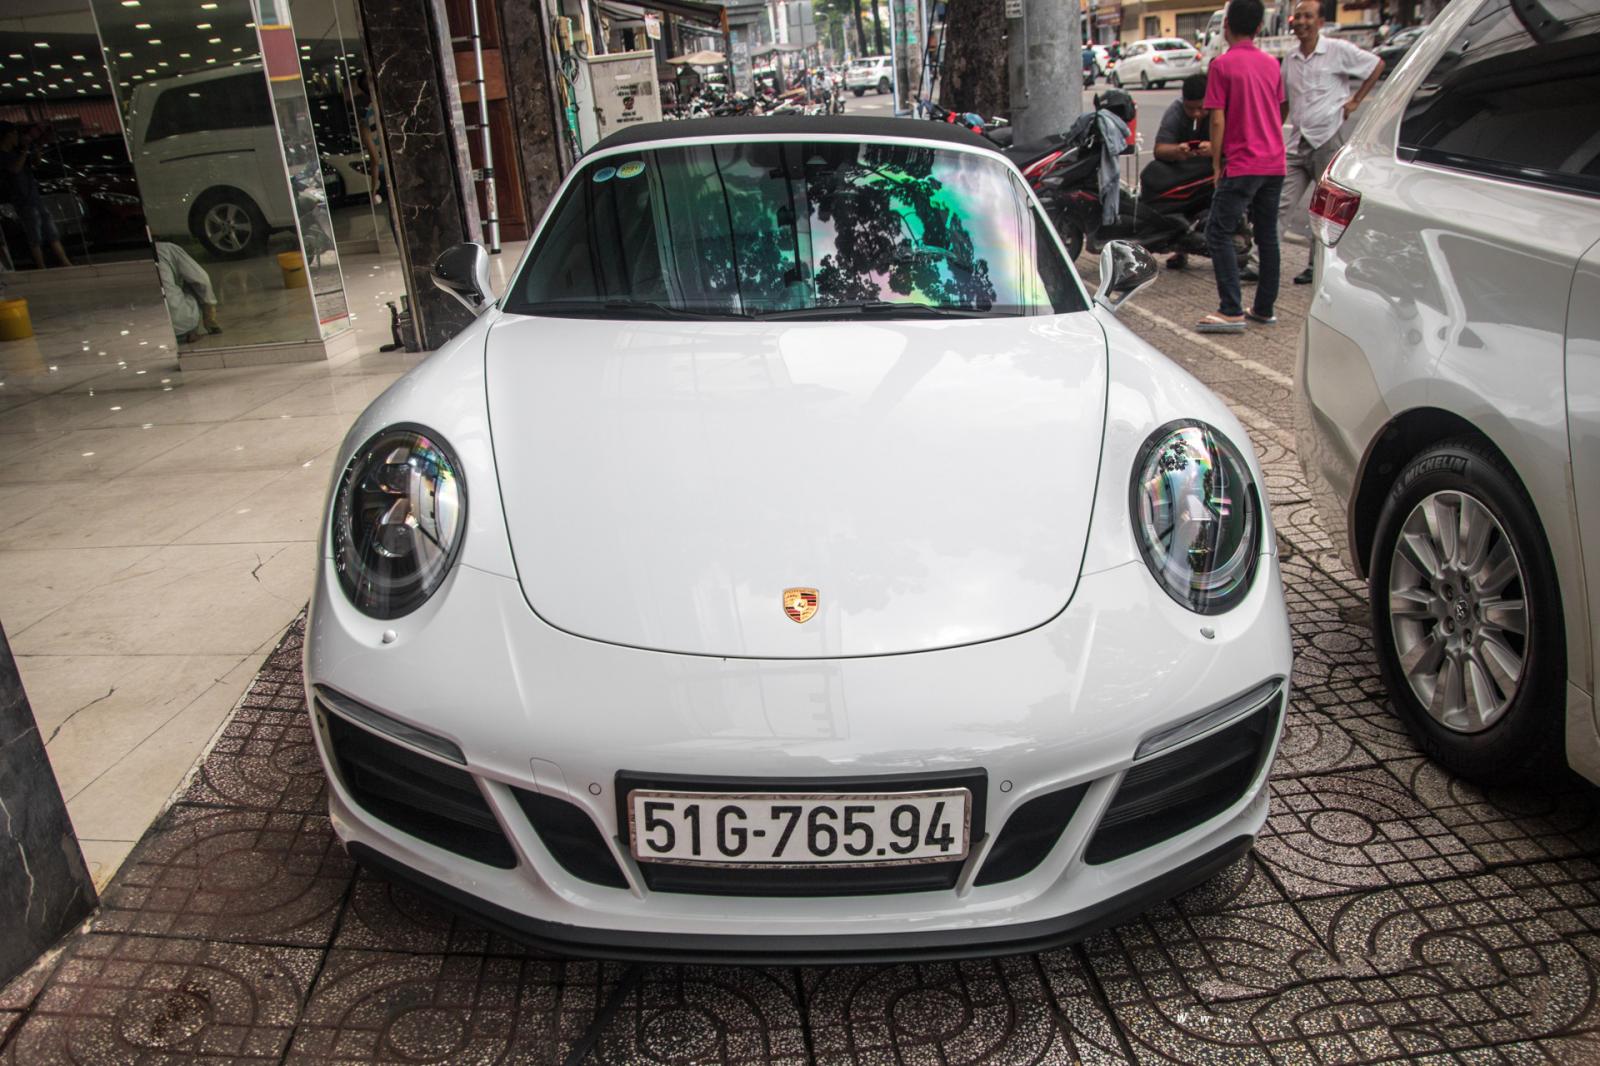 Siêu xe Porsche 911 Targa 4 GTS độc nhất Việt Nam được đăng ký biển số 2a